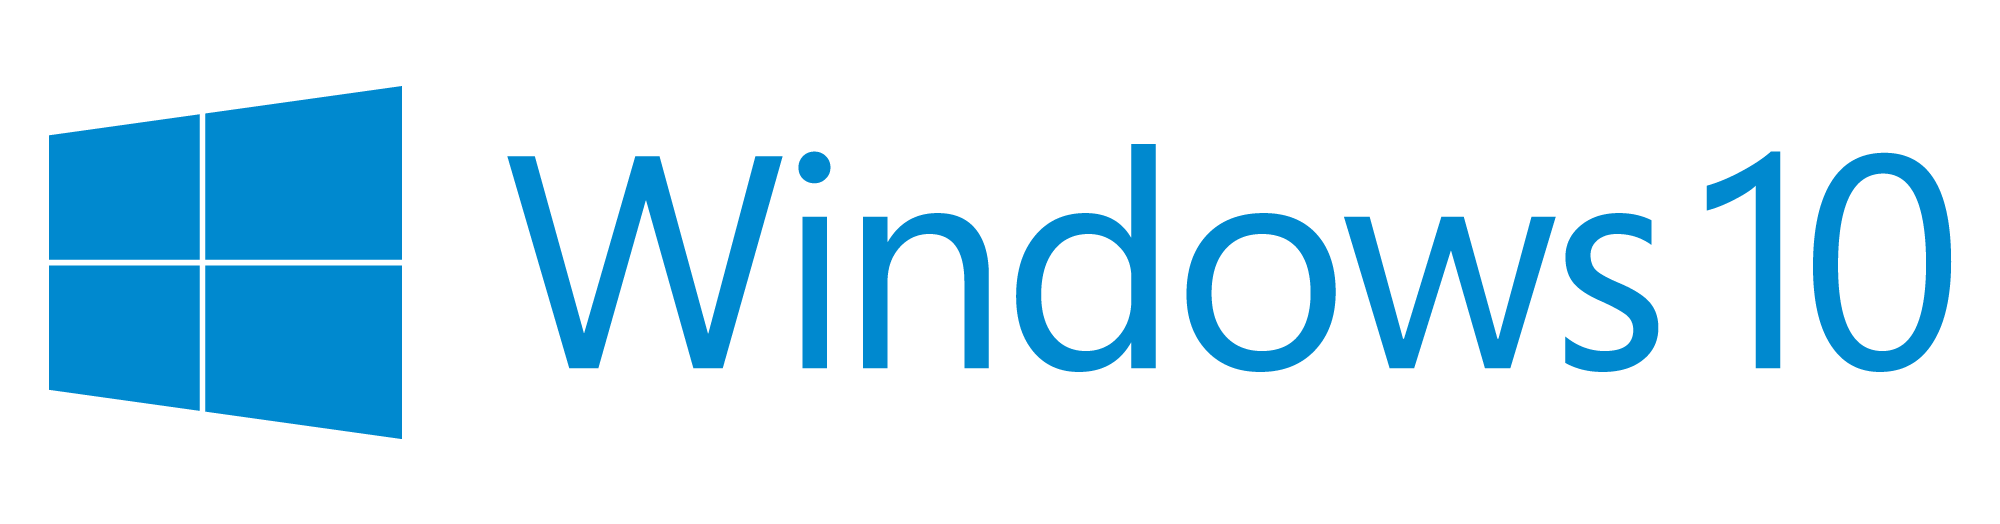 windows-10-logo.png